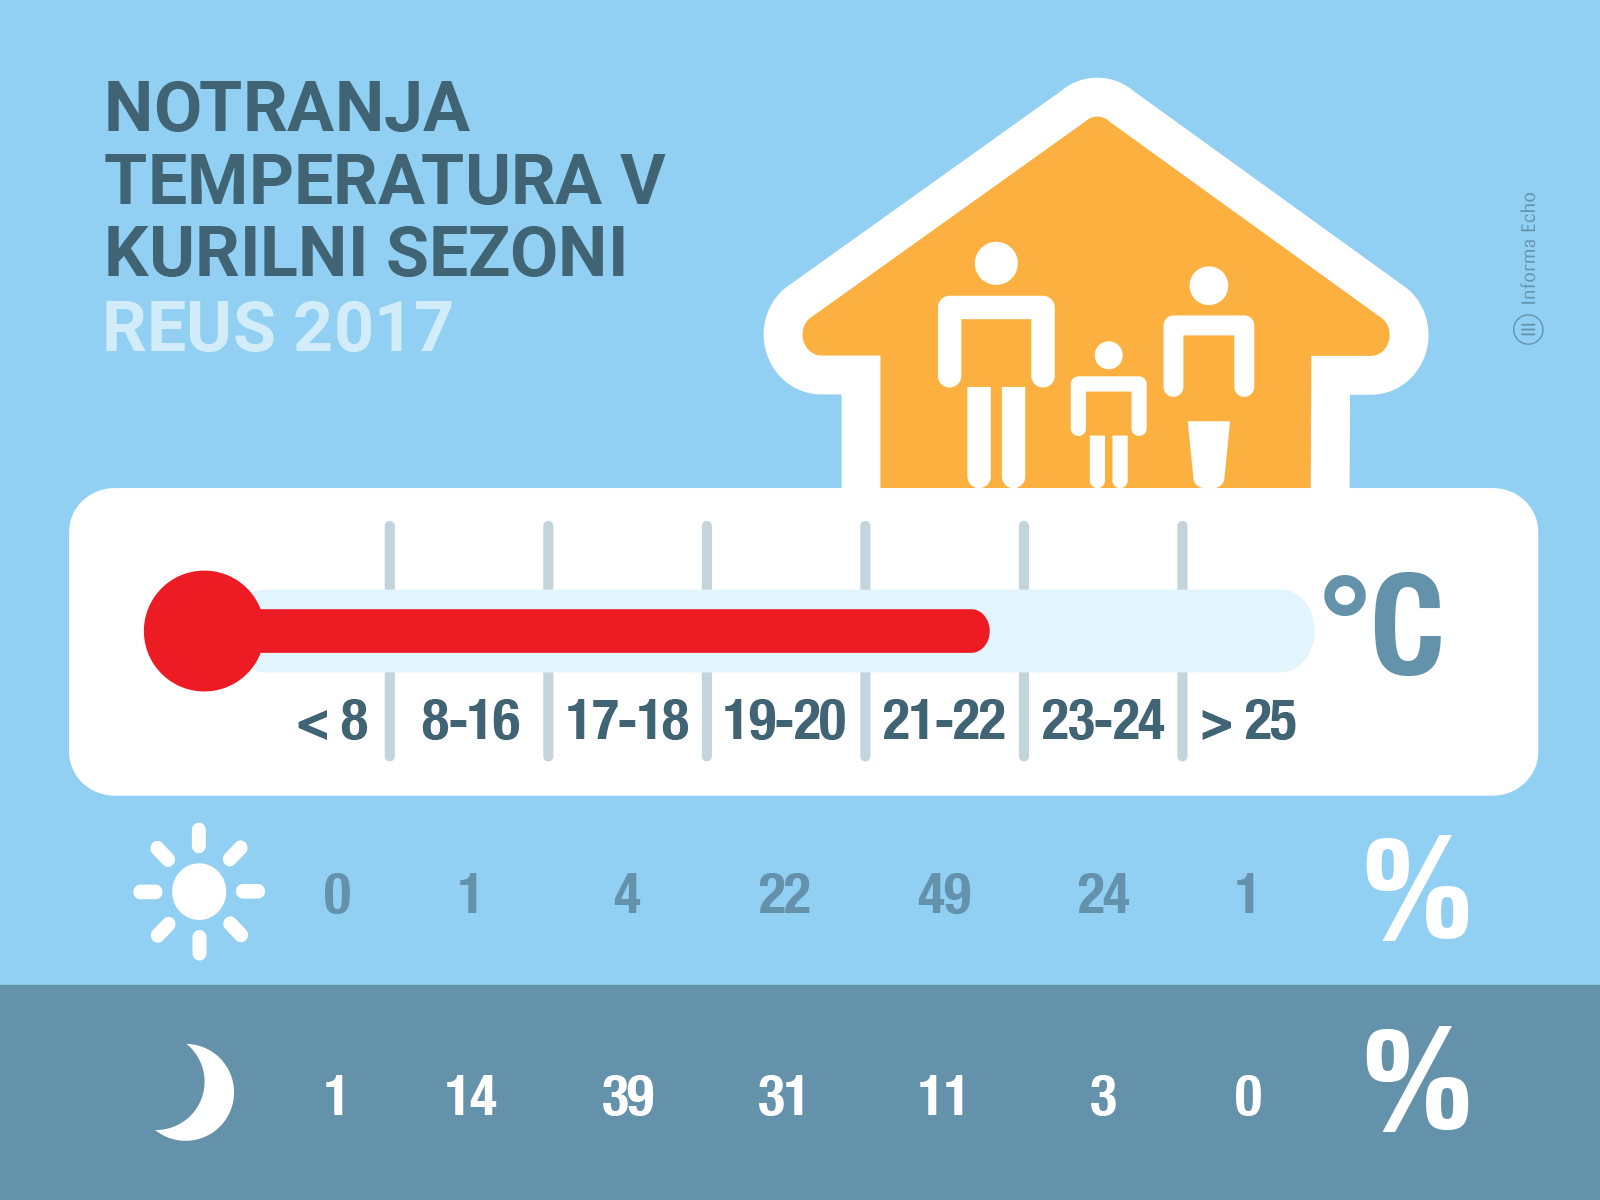 Temperatura v slovenskih domovih v času gretja / Raziskava REUS 2017